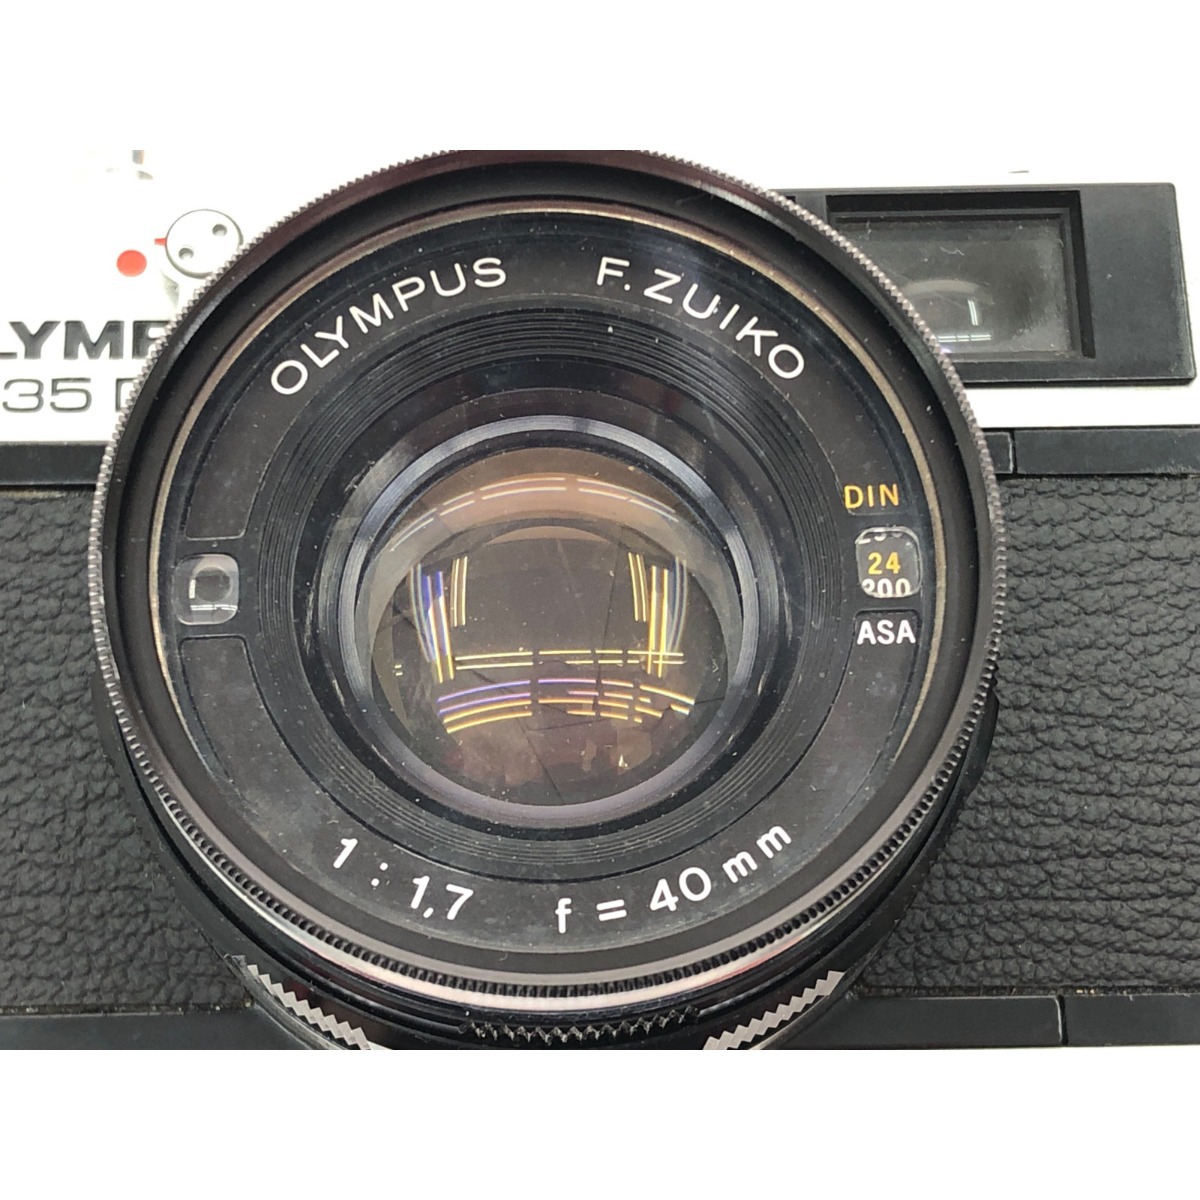 ▼▼ OLYMPUS オリンパス ジャンク品 フィルムカメラ レンジファインダー 1:1.7 f=40mm 35DC 全体的に状態が悪い_画像5